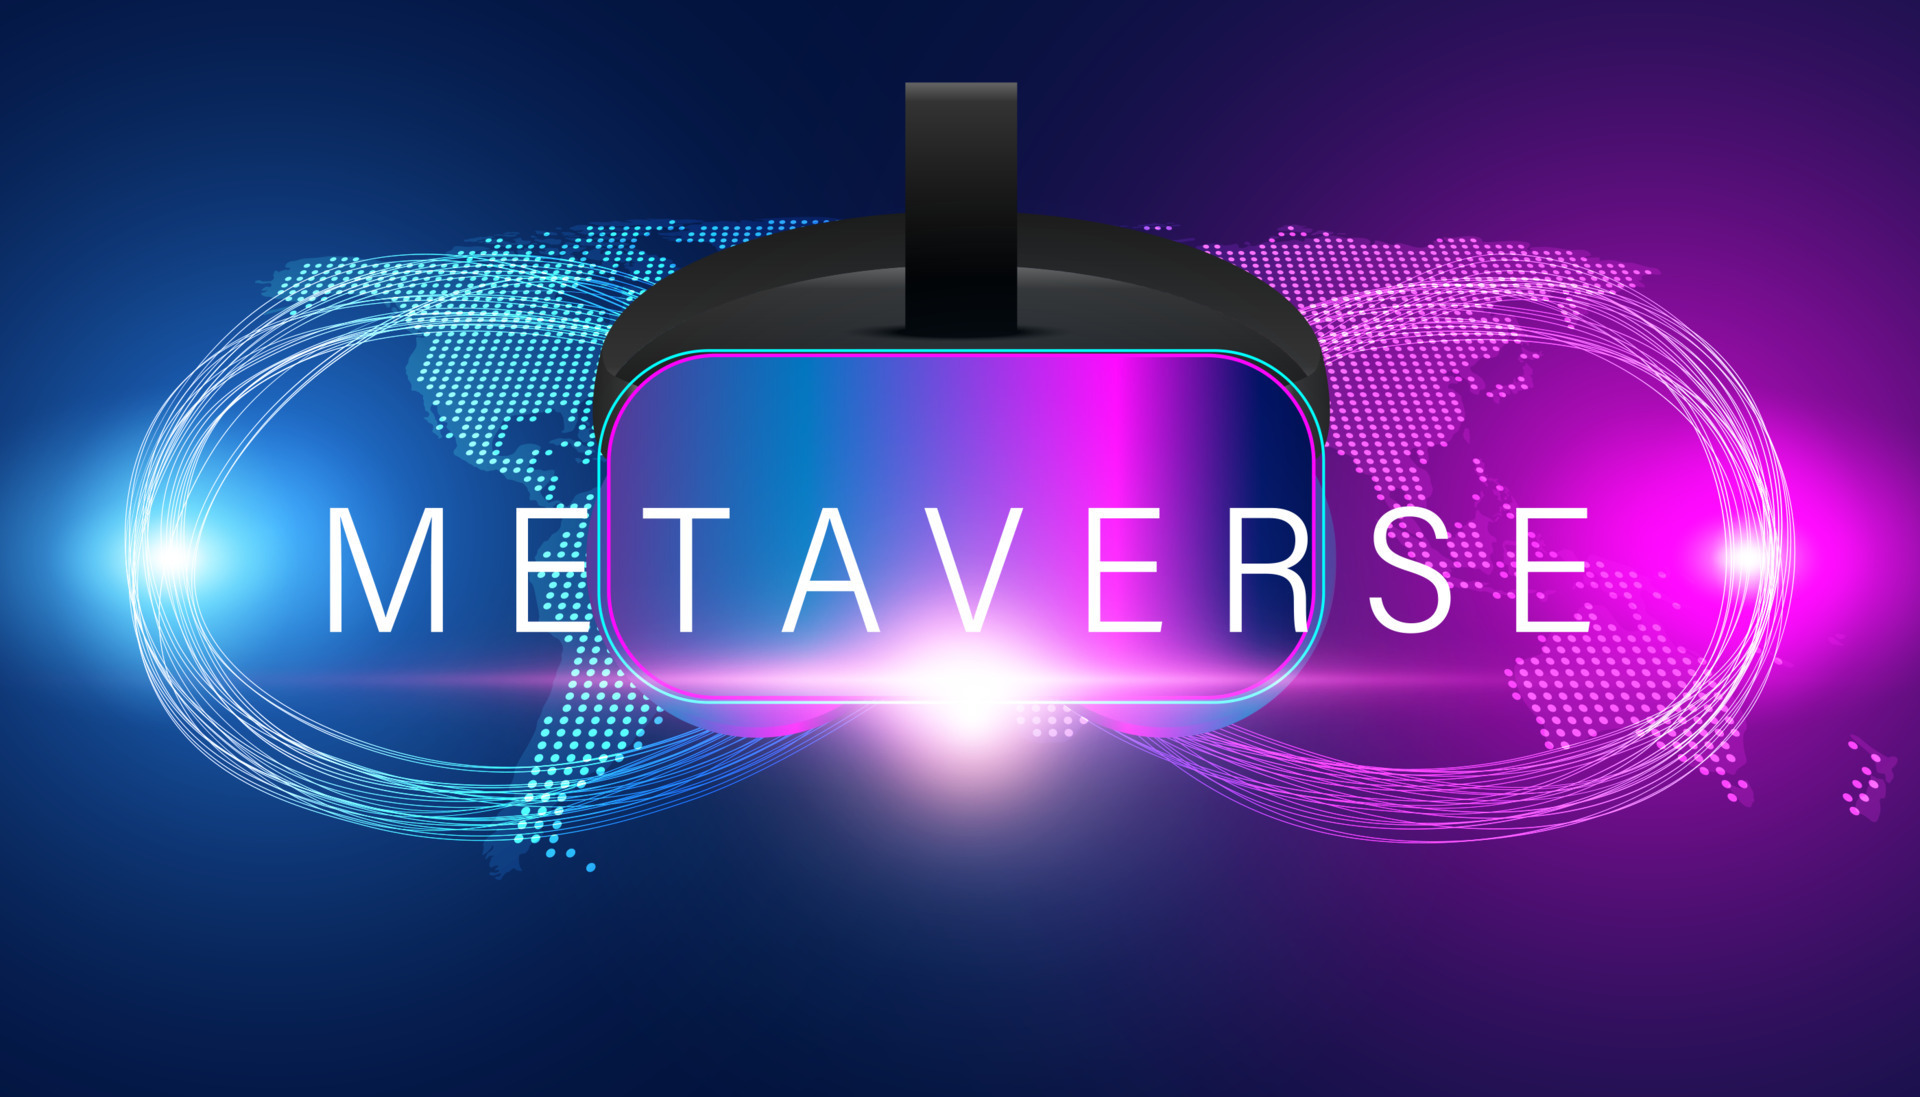 Mapa do mundo metaverso globo de luz azul padrão de fundo ondulado no  conceito metaverso, realidade virtual, realidade aumentada e tecnologia  blockchain.